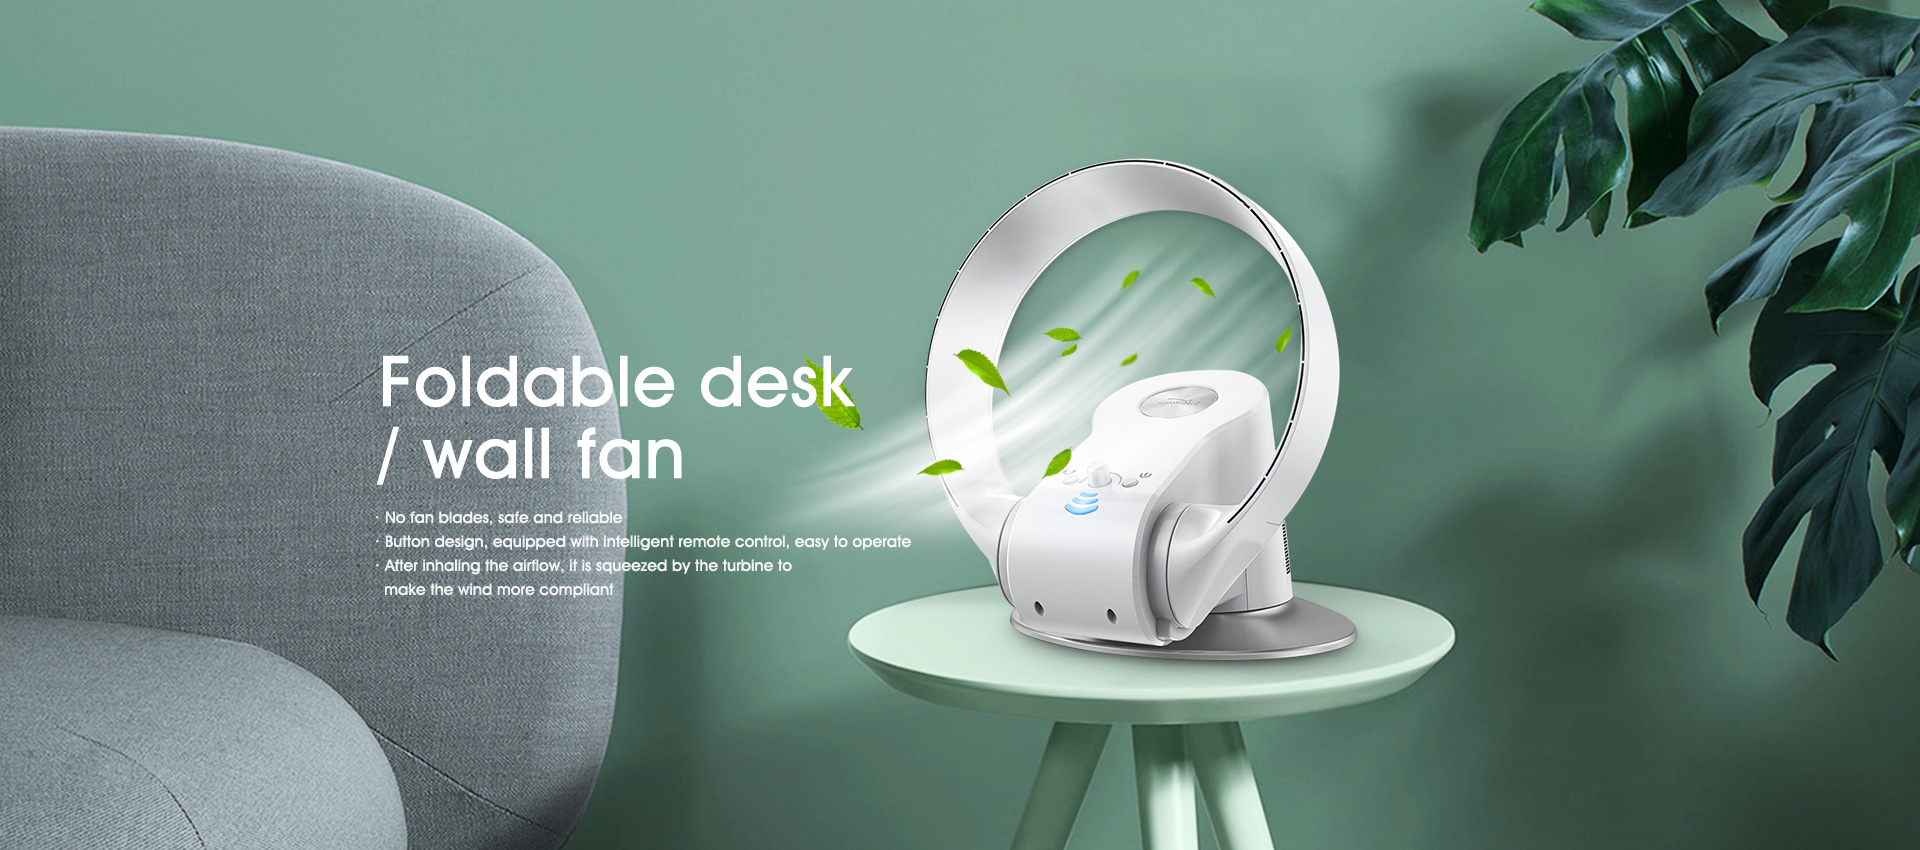 Foldable desk / wall fan